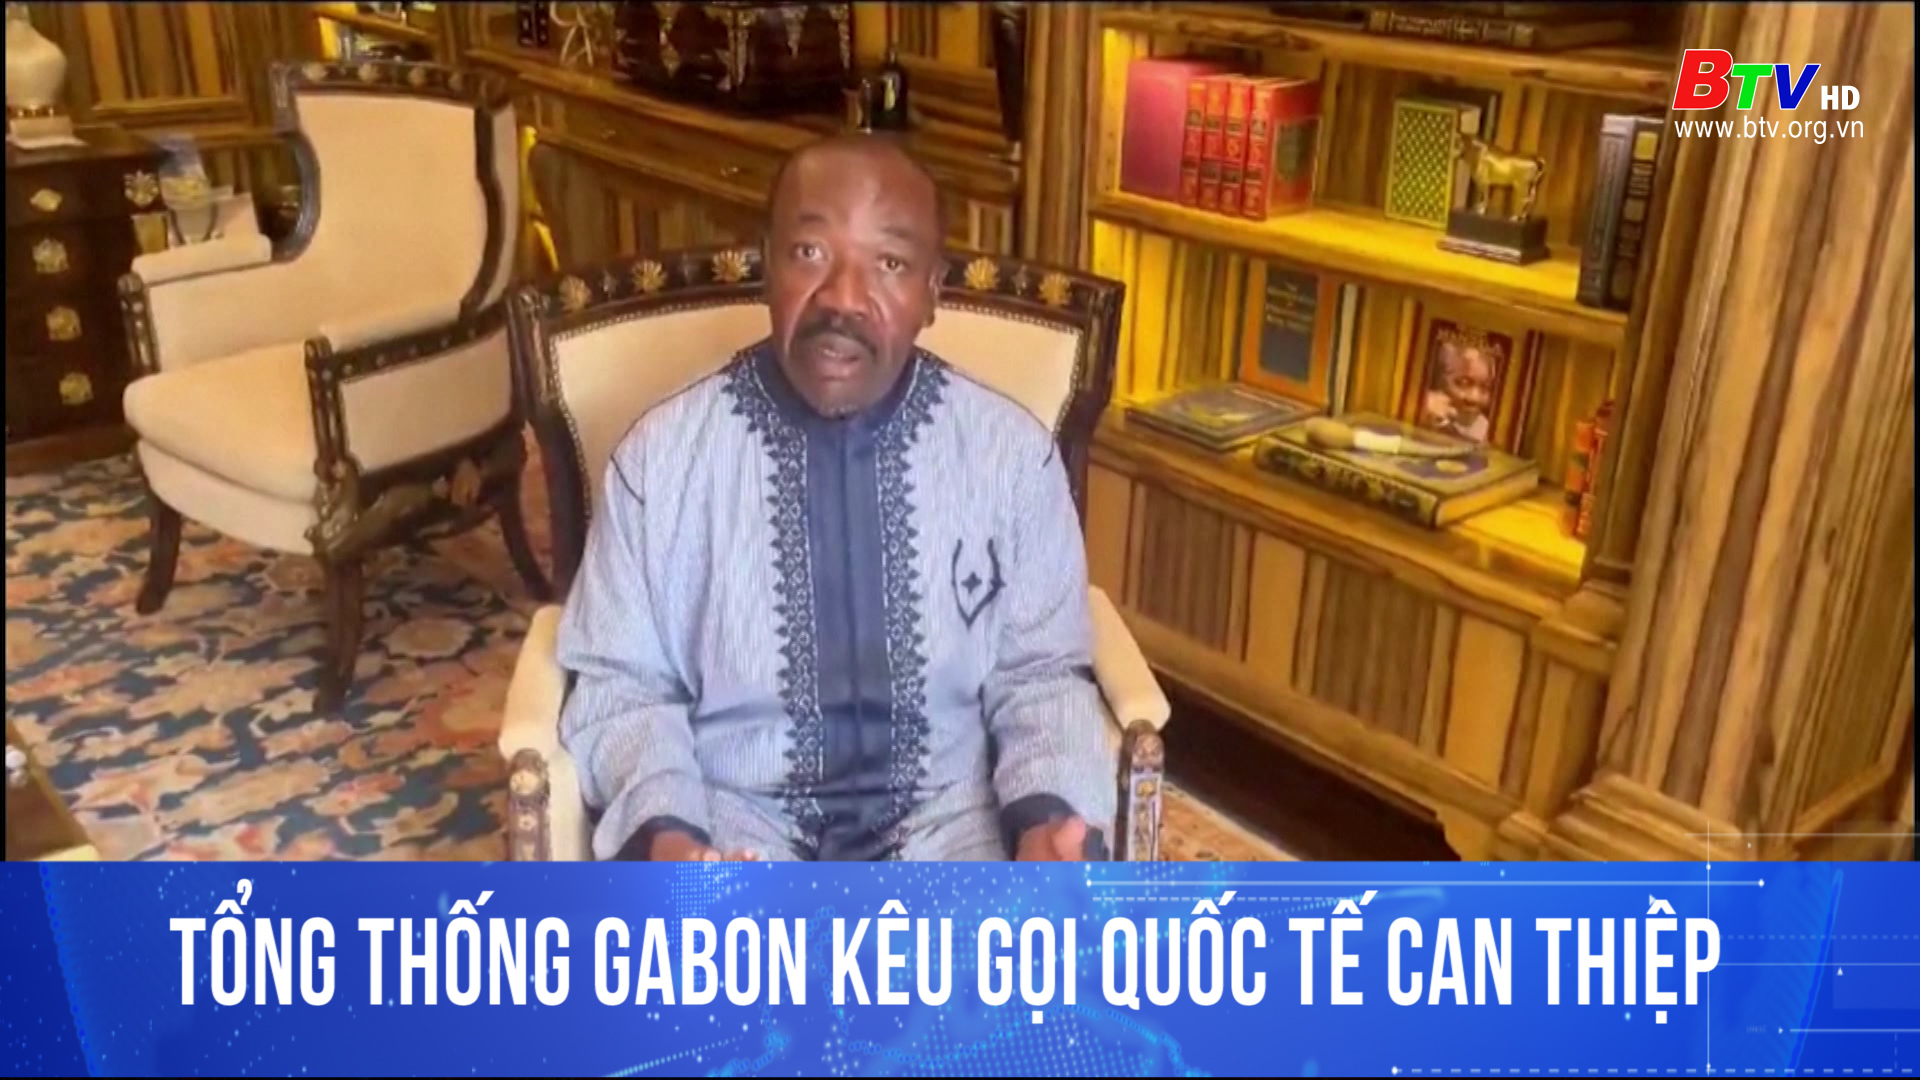 Tổng thống Gabon kêu gọi quốc tế can thiệp